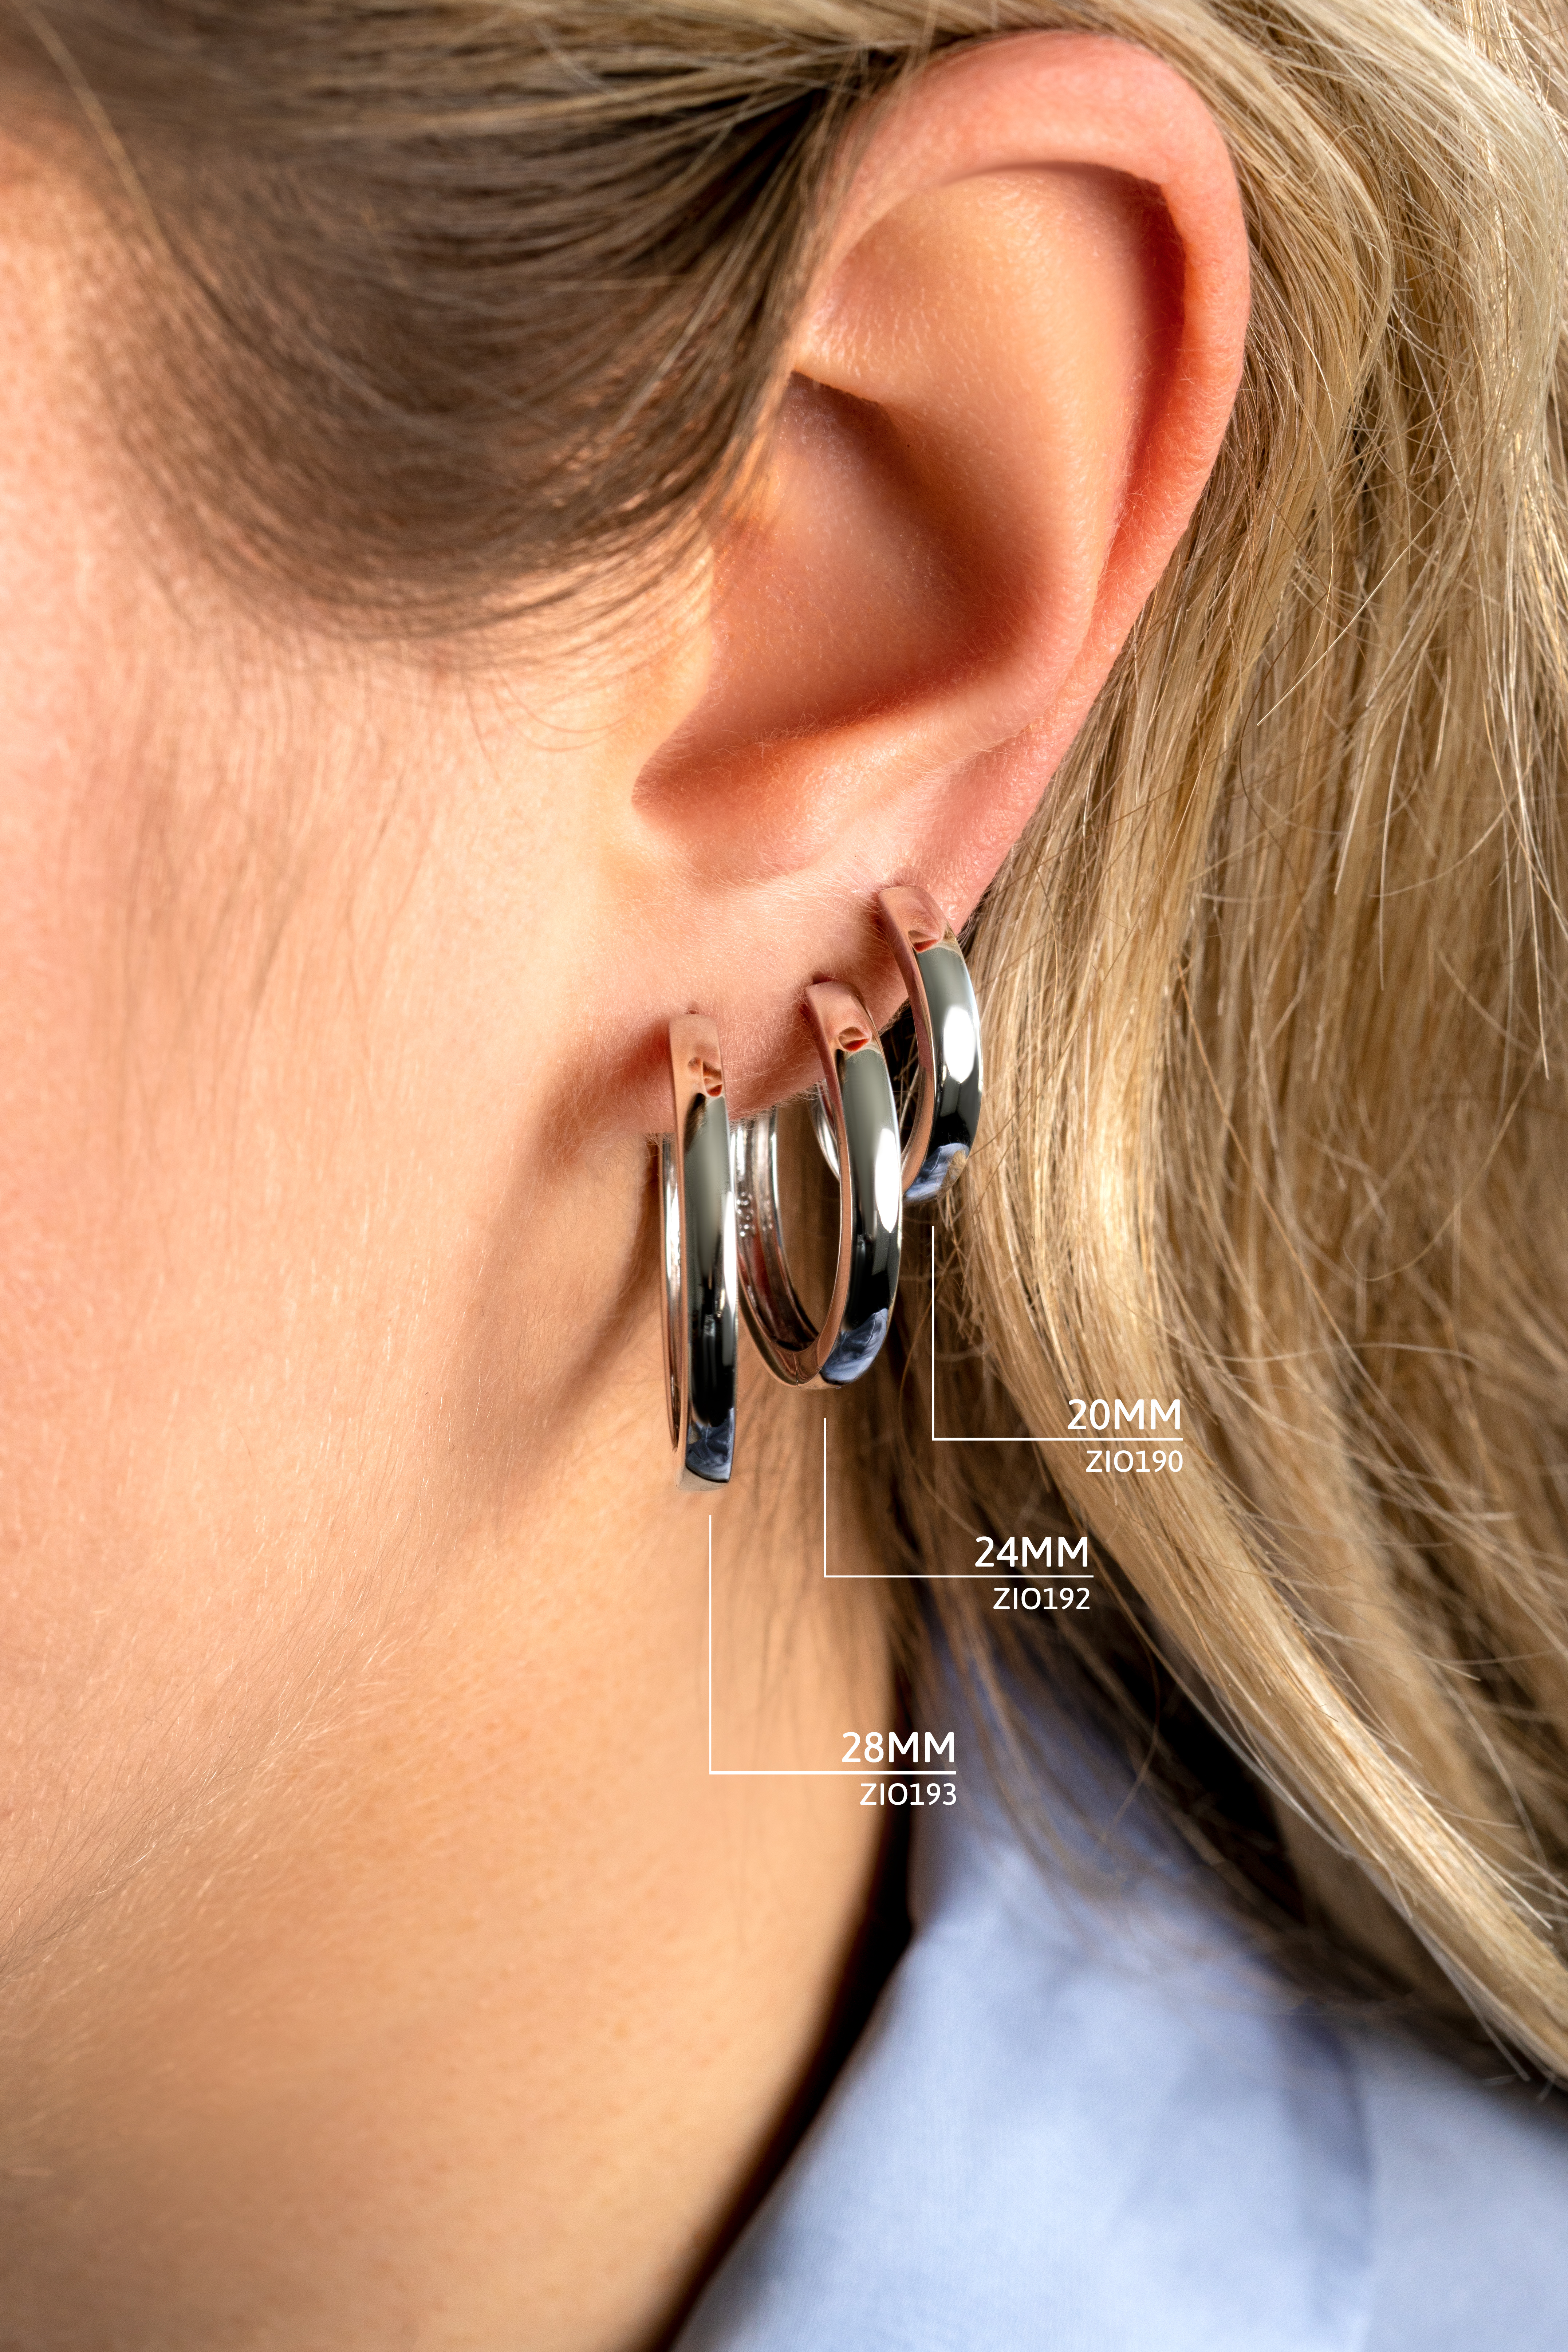 20mm ZINZI Sterling Silver Hoop Earrings width 3mm ZIO190